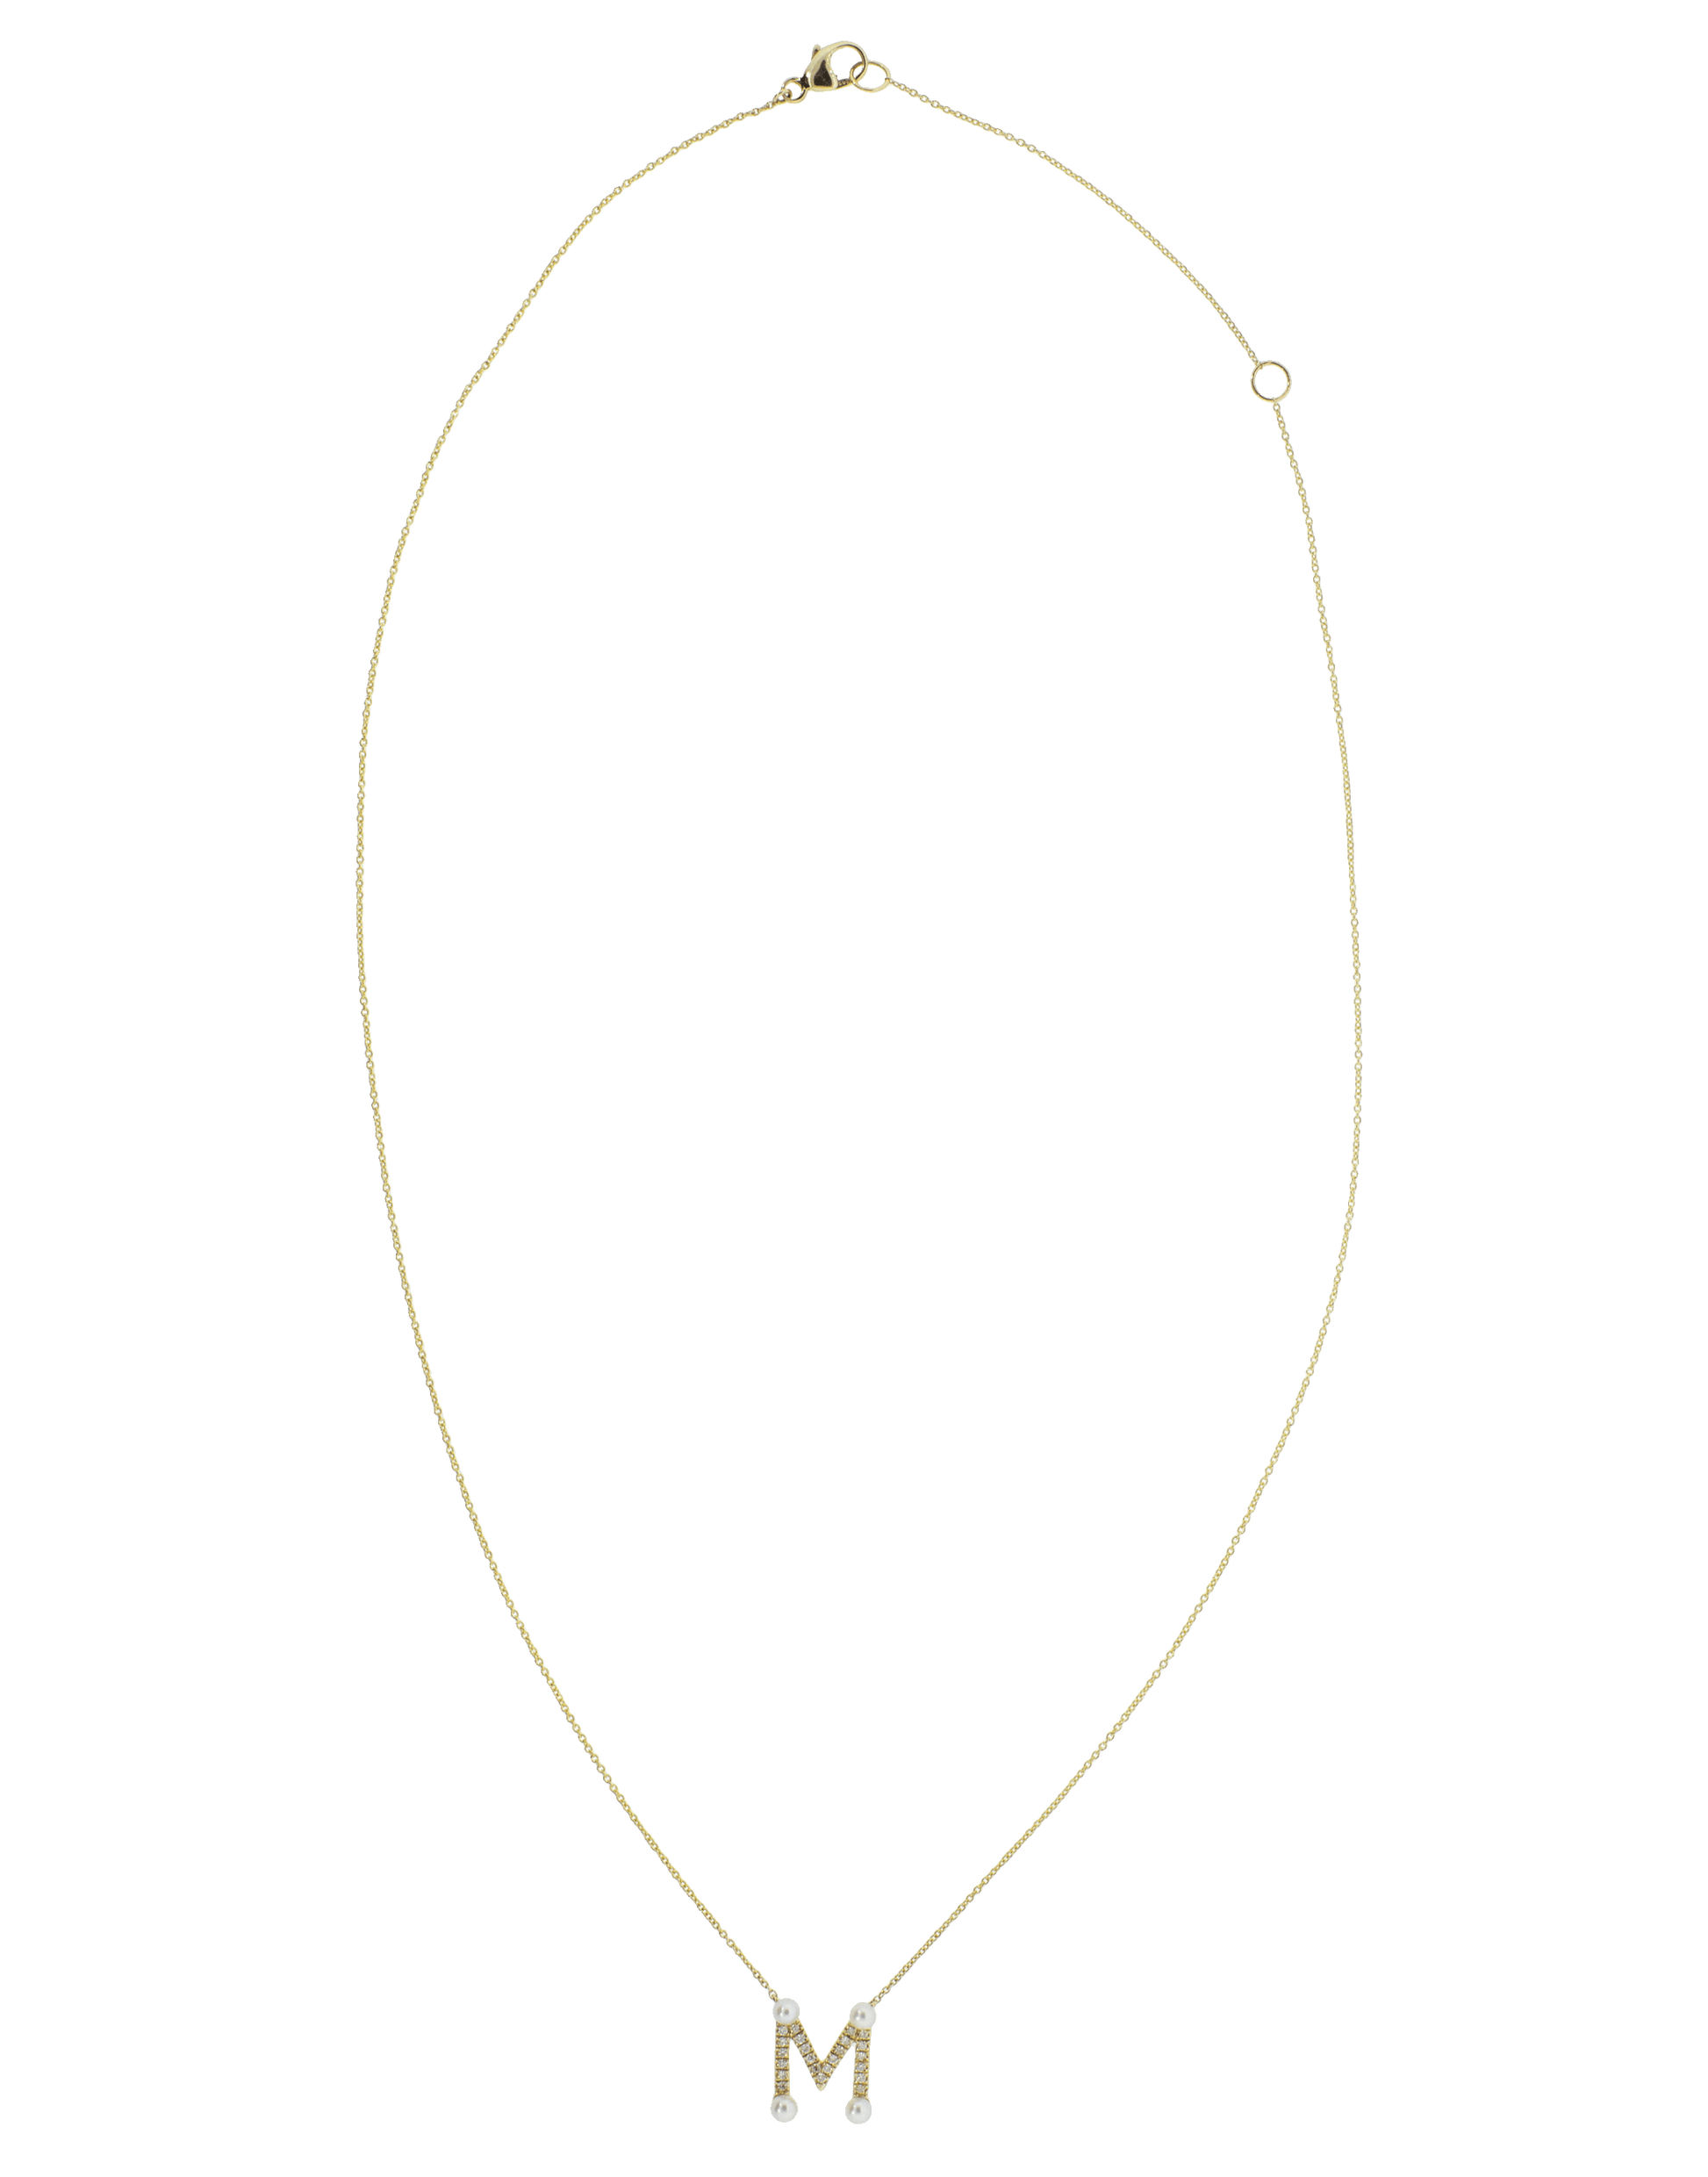 DANA REBECCA DESIGNS-Pearl and Diamond 'M' Pendant Necklace-YELLOW GOLD